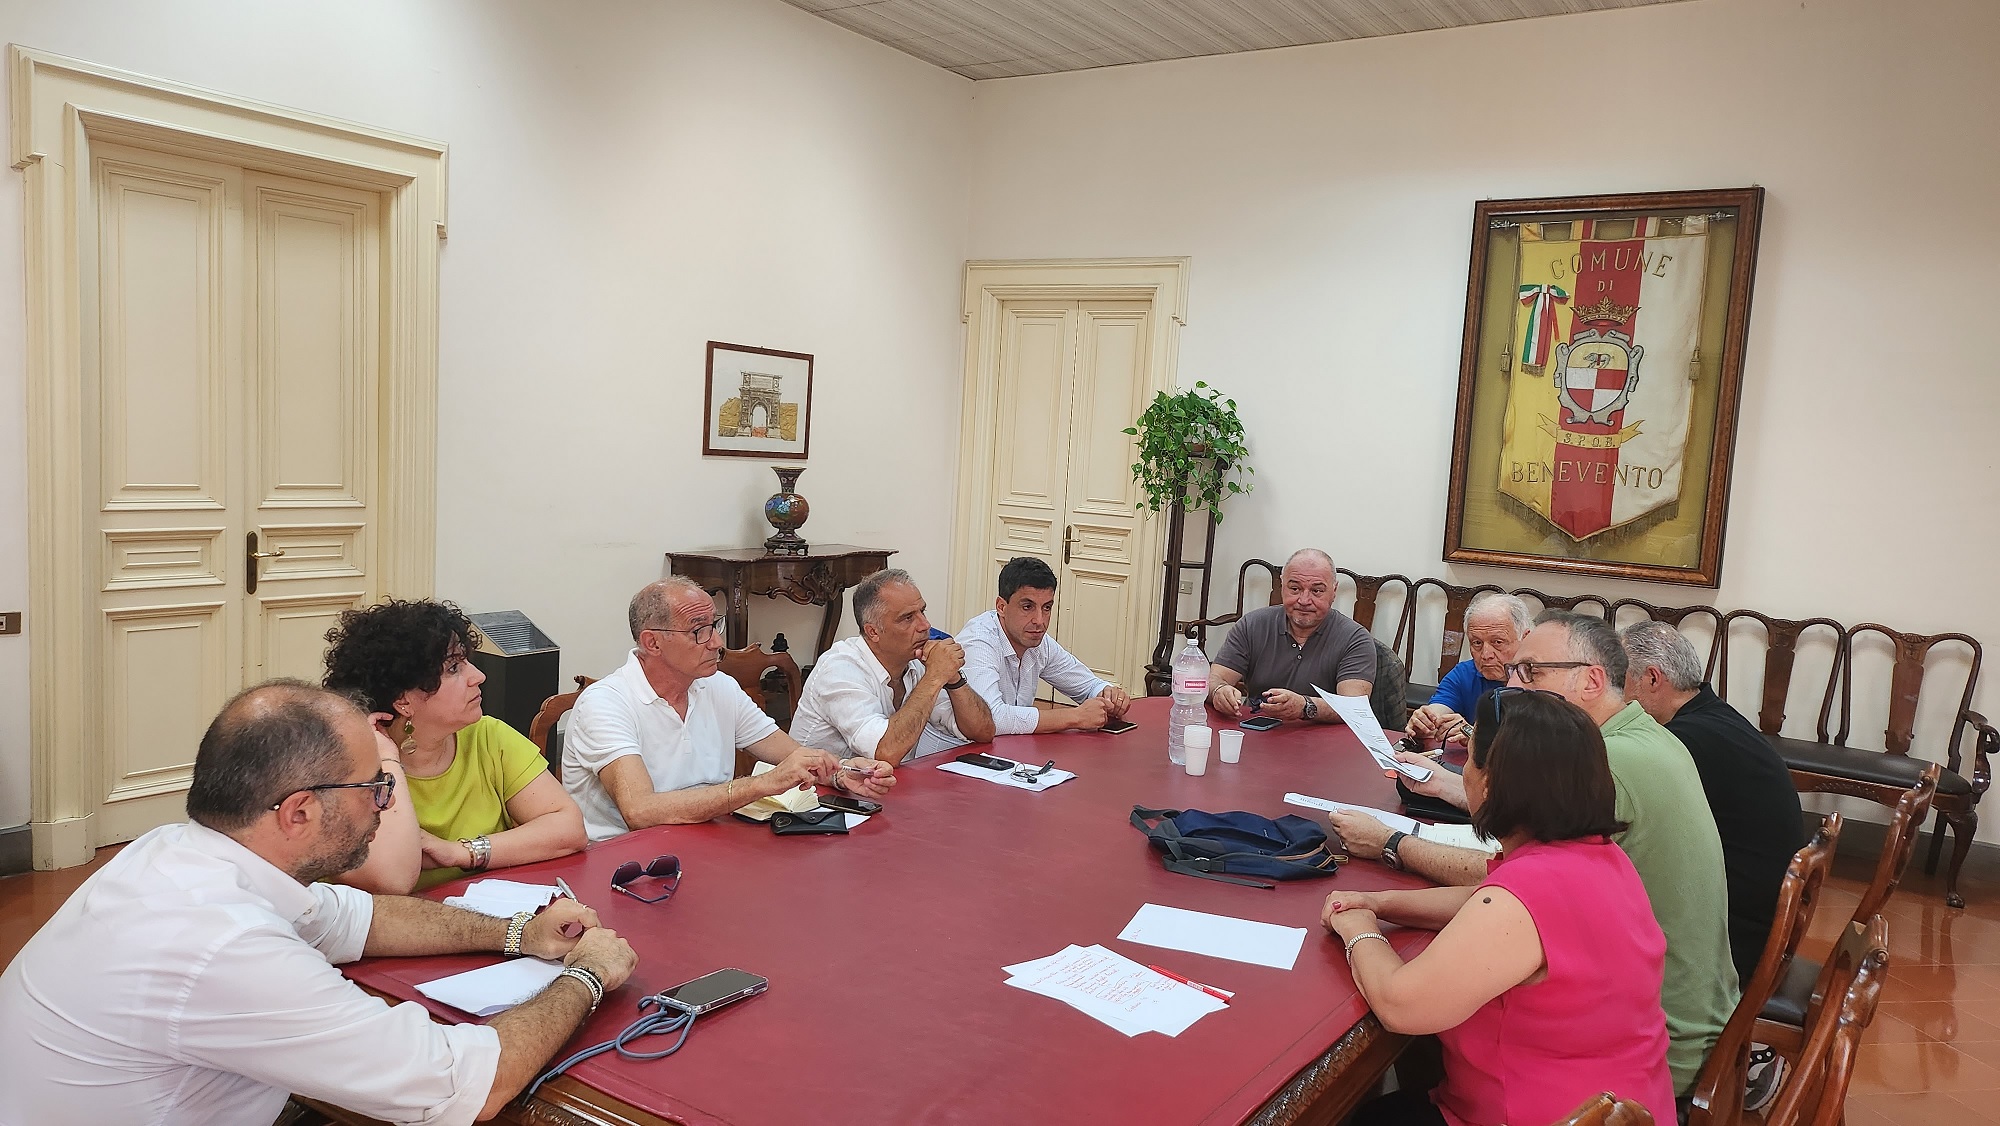 A Palazzo Mosti riunione per l’attuazione del progetto “Benevento Città Cardioprotetta”. Evento apripista a settembre